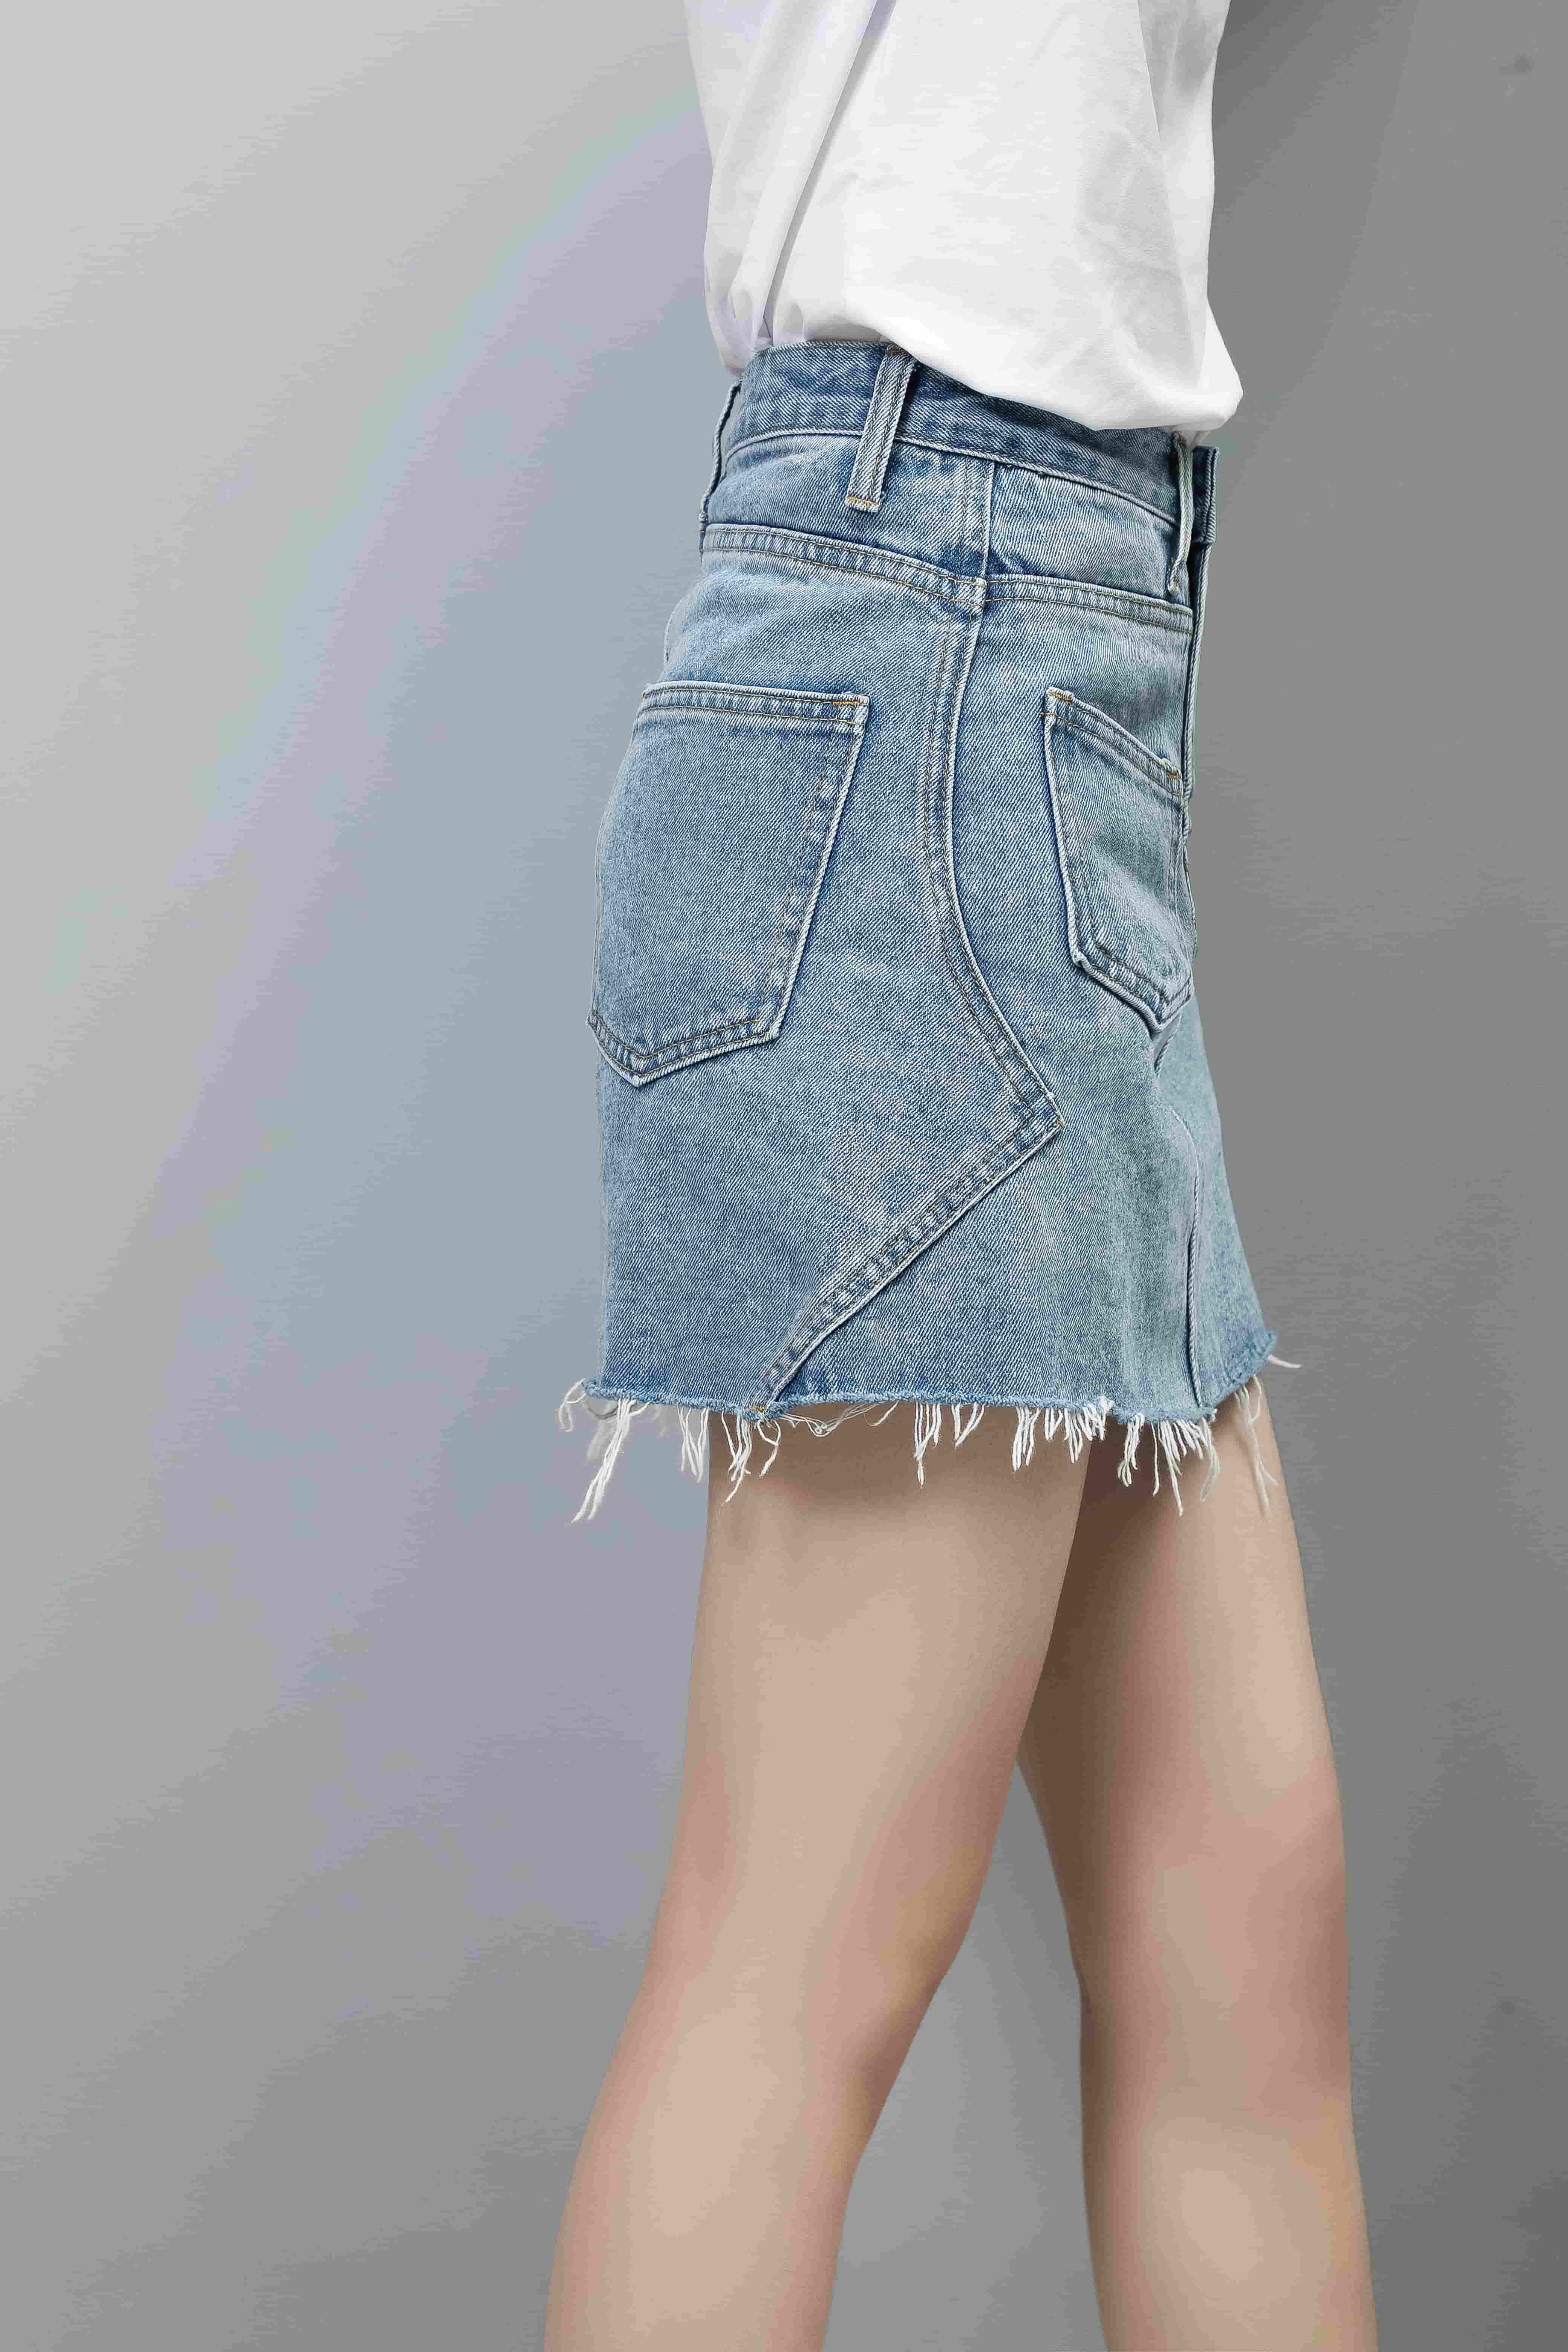 [私服穿搭] 简约的磨白牛仔短裙穿搭 | Xs Wei Fashion Blog